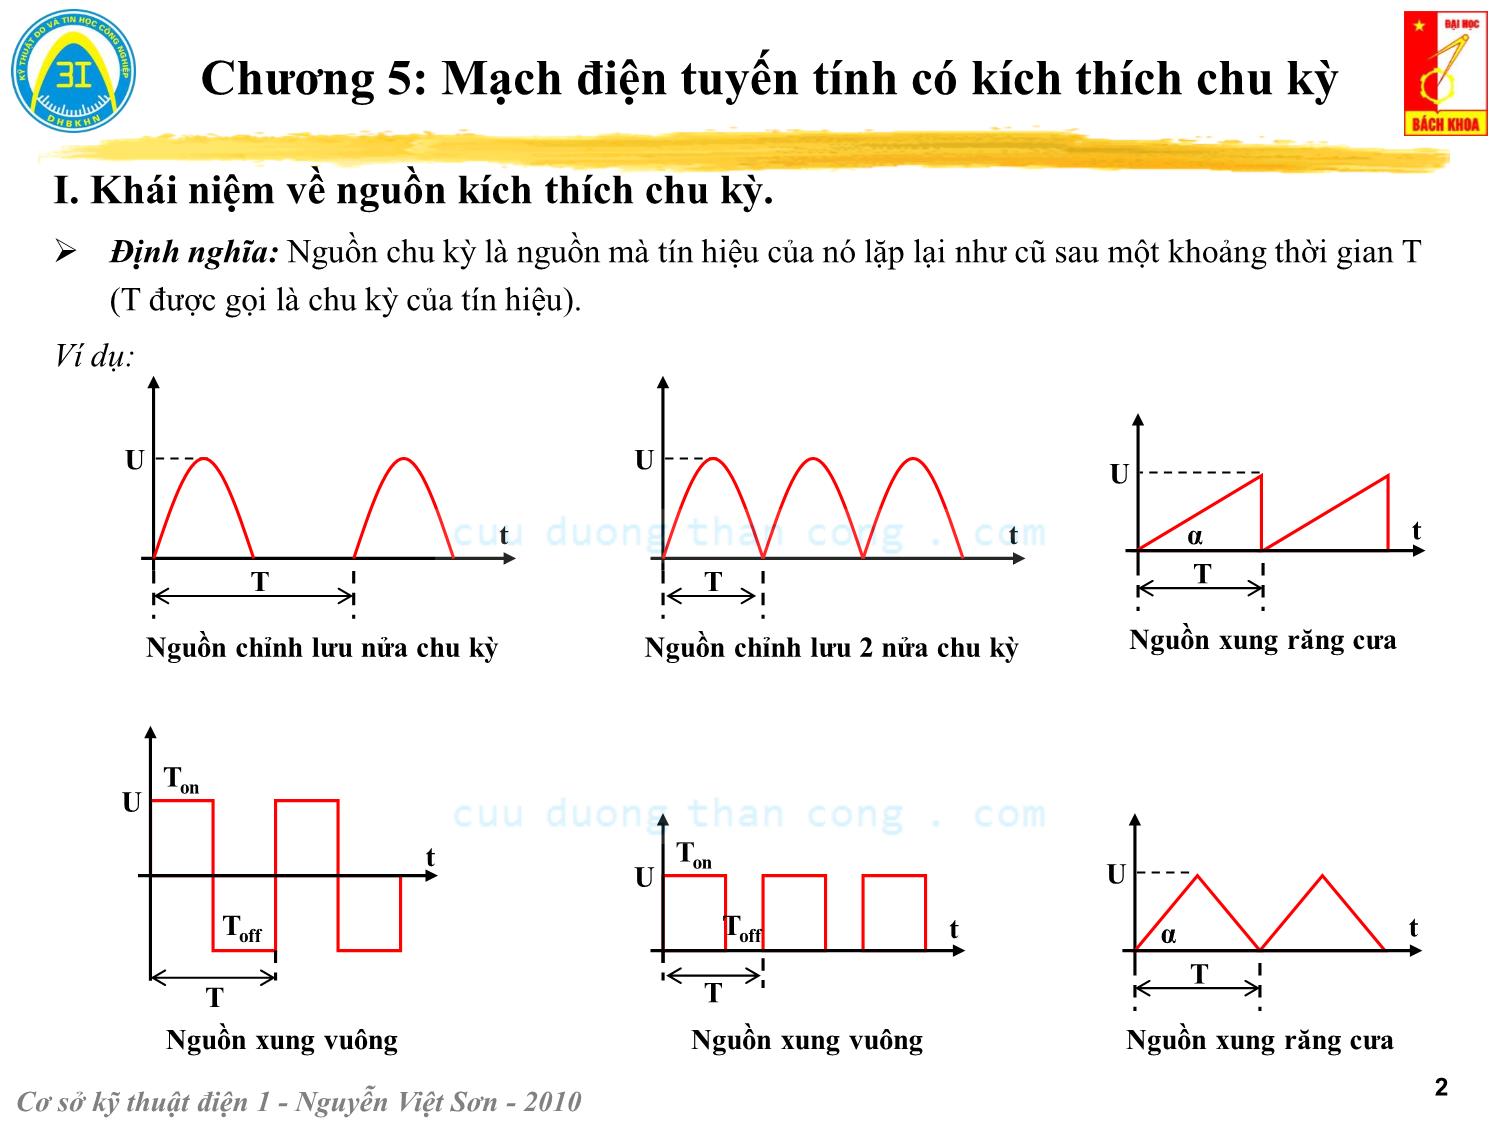 Bài giảng Kỹ thuật điện 1 - Chương 5: Mạch điện tuyến tính có kích thích chu kỳ - Nguyễn Việt Sơn trang 2